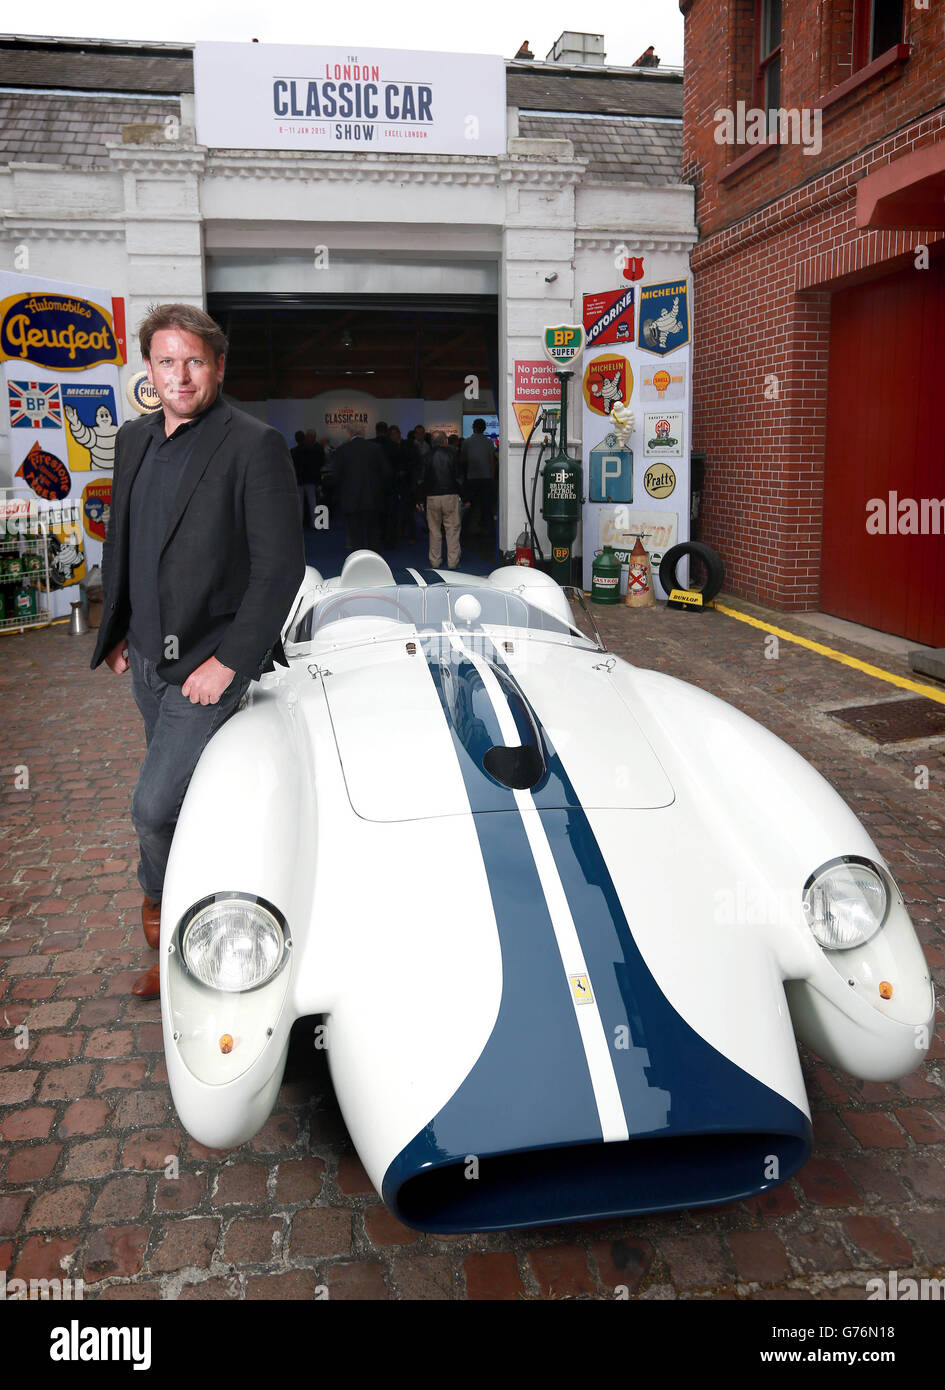 James Martin, le chef de la télévision, avec une Ferrari TR250 1957 lors du lancement du premier salon de l'automobile classique de Londres, qui aura lieu à Excel du 8 au 11 janvier 2015, à Kensington, Londres. Banque D'Images